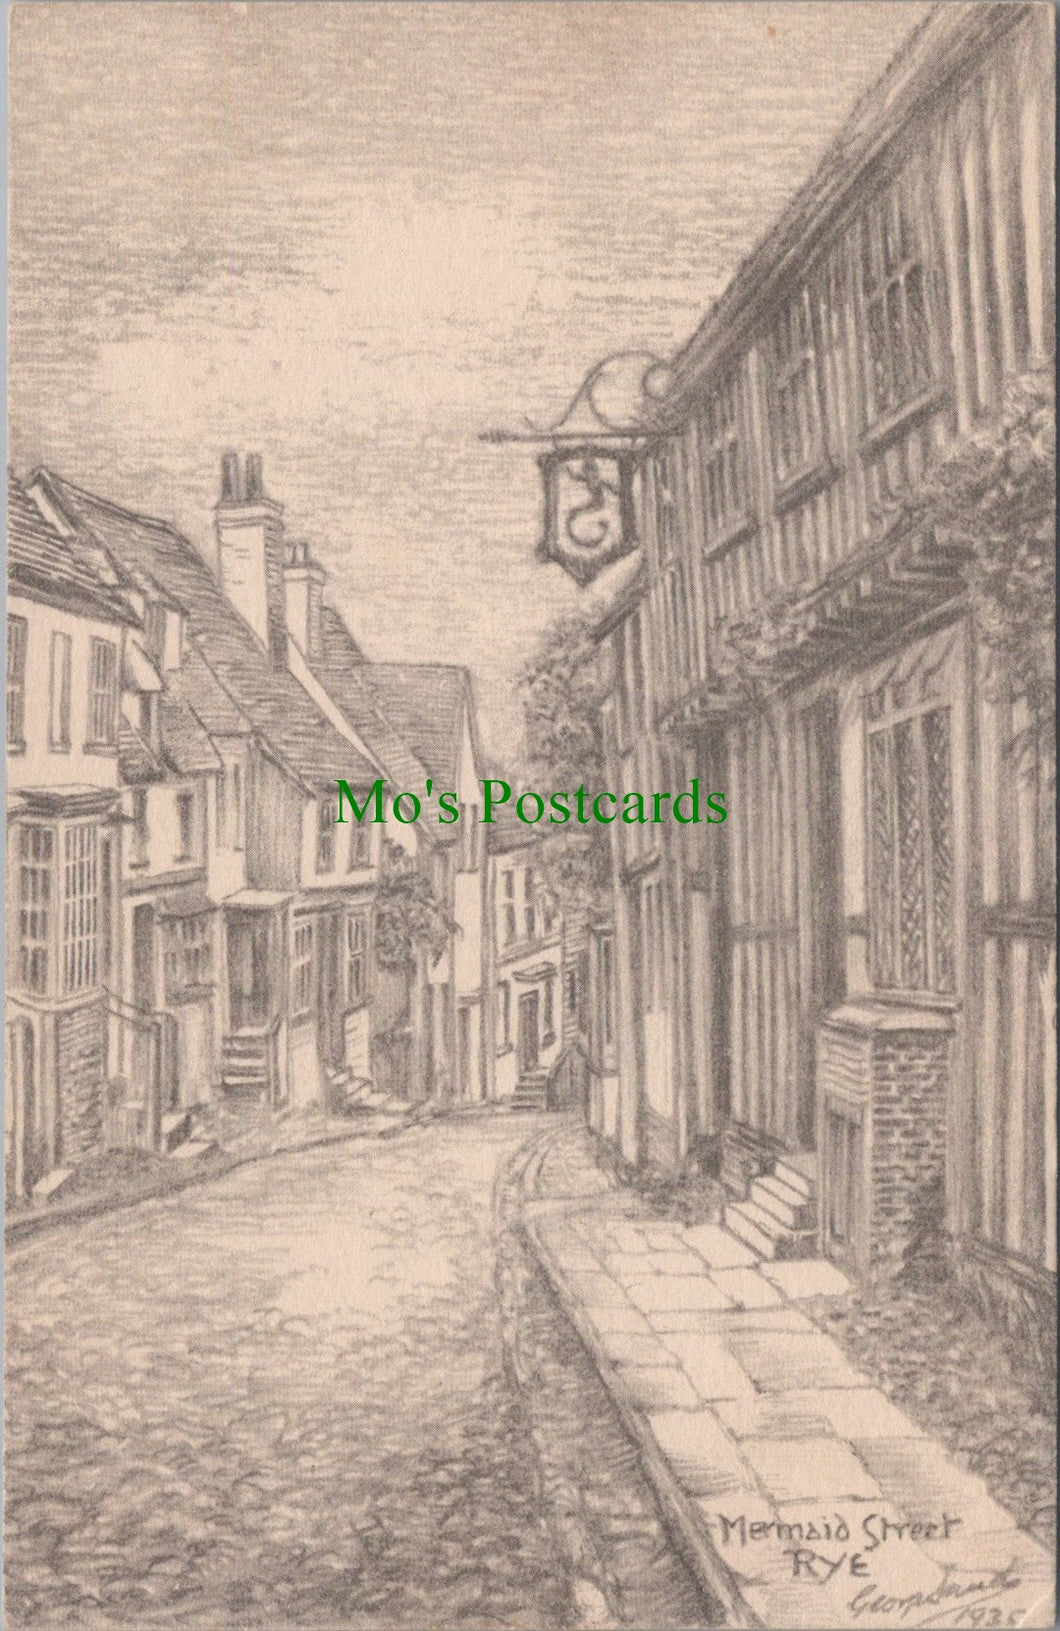 Sussex Postcard - Mermaid Street, Rye Pencil Sketch  DC977